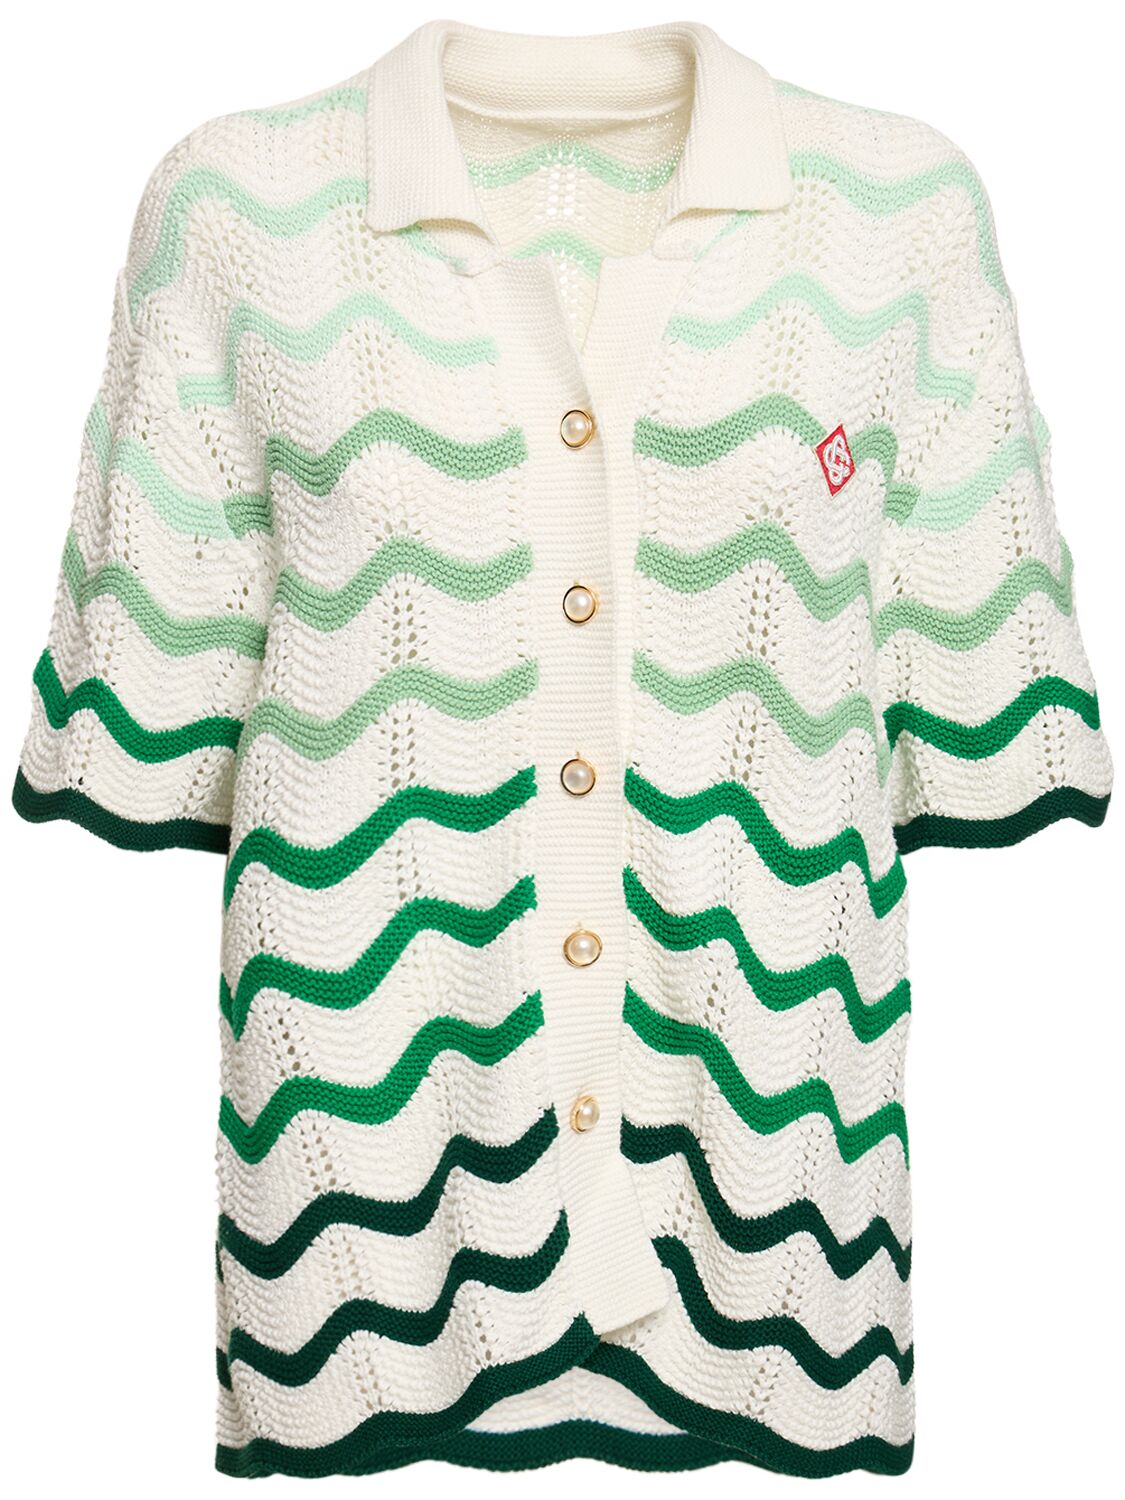 Gradient Wave Crochet Cotton Shirt